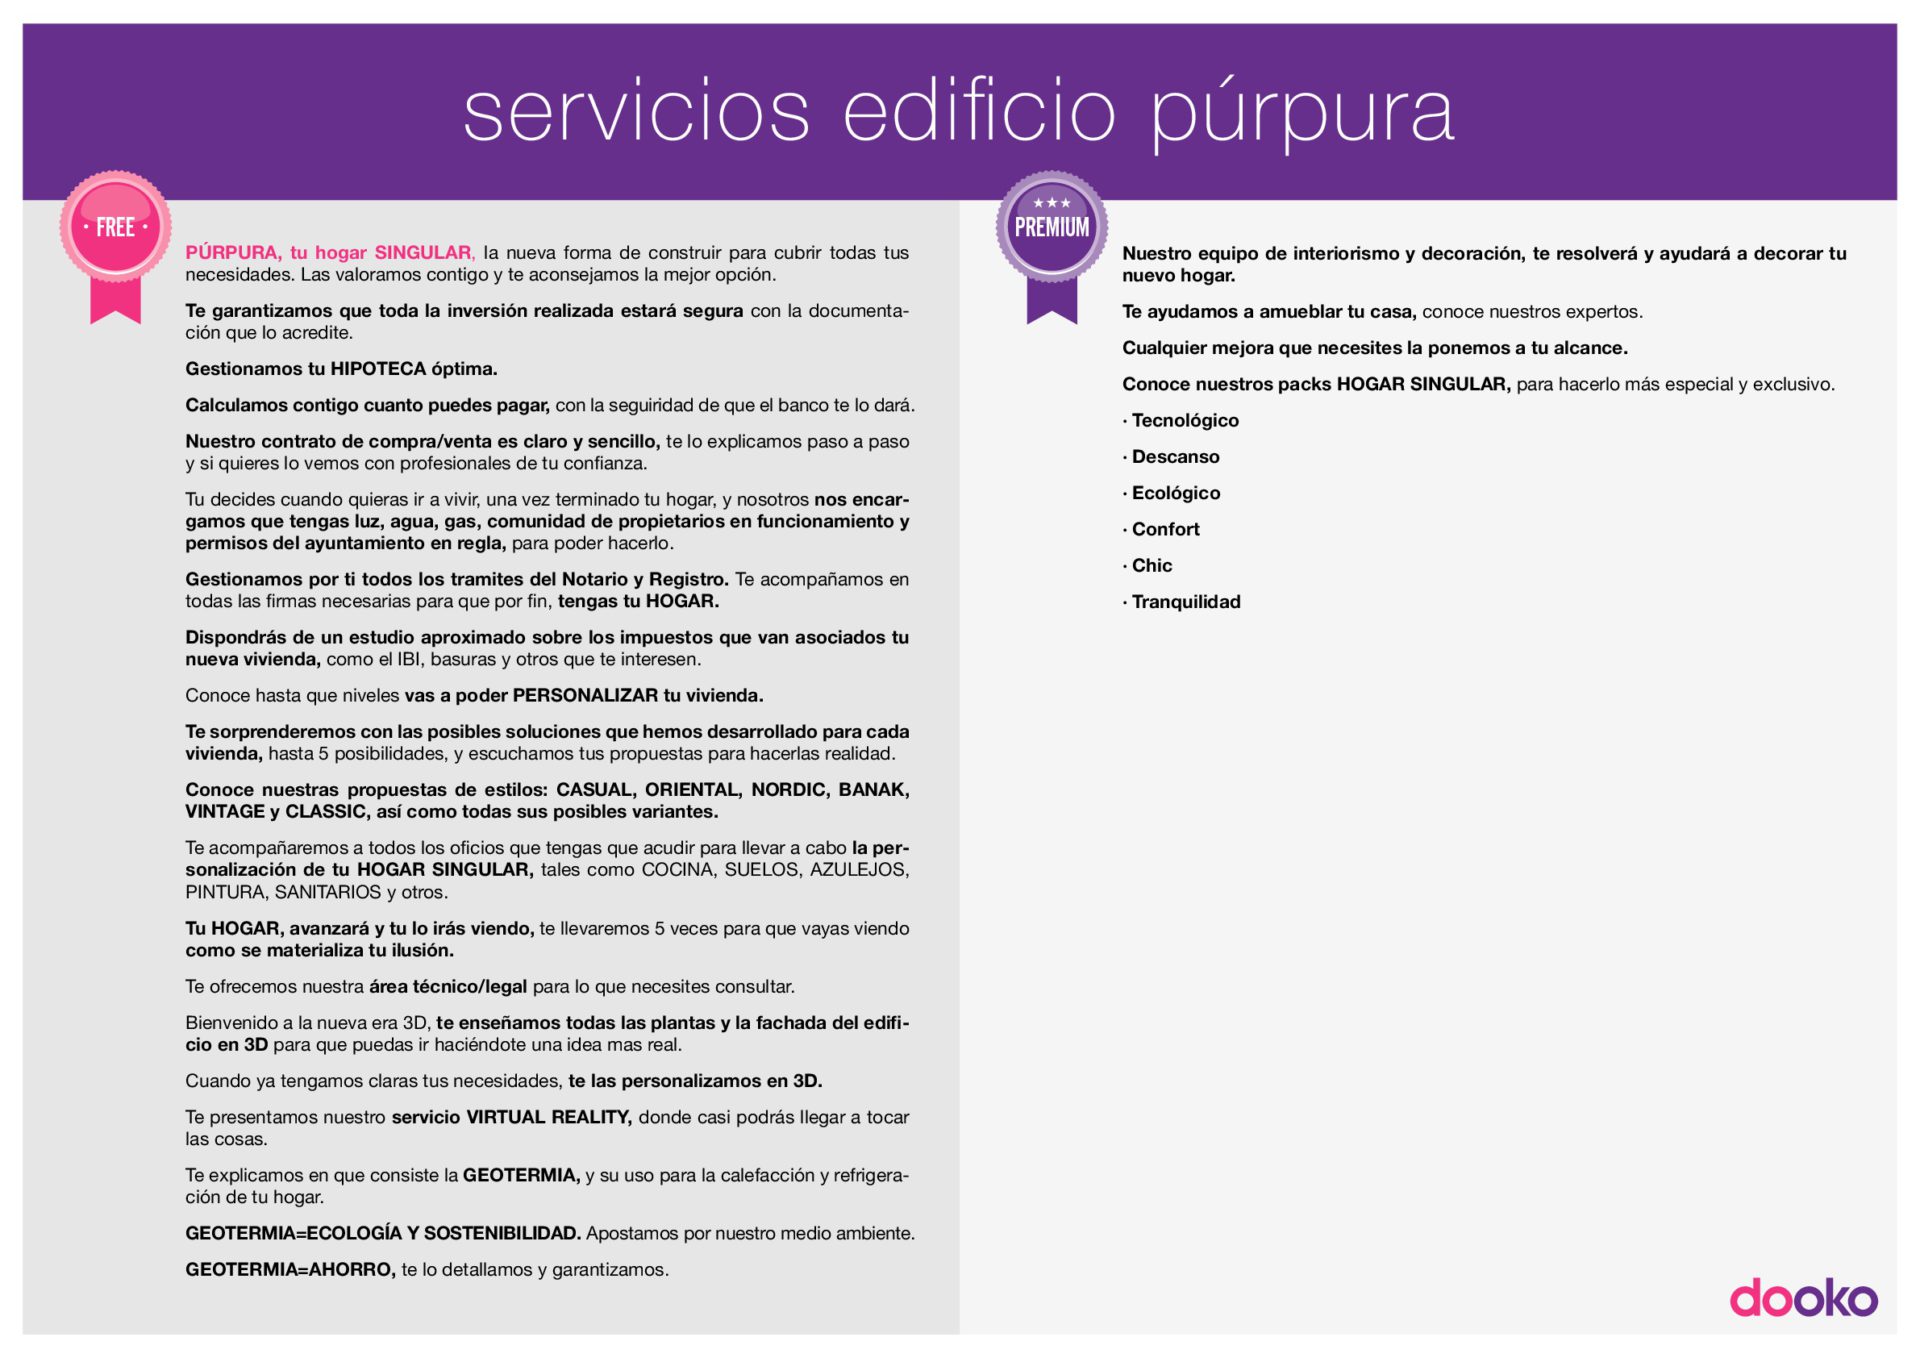 Servicio_purpura-dooko-La vivienda que buscas en Villena-Tu hogar singular-personalizacion